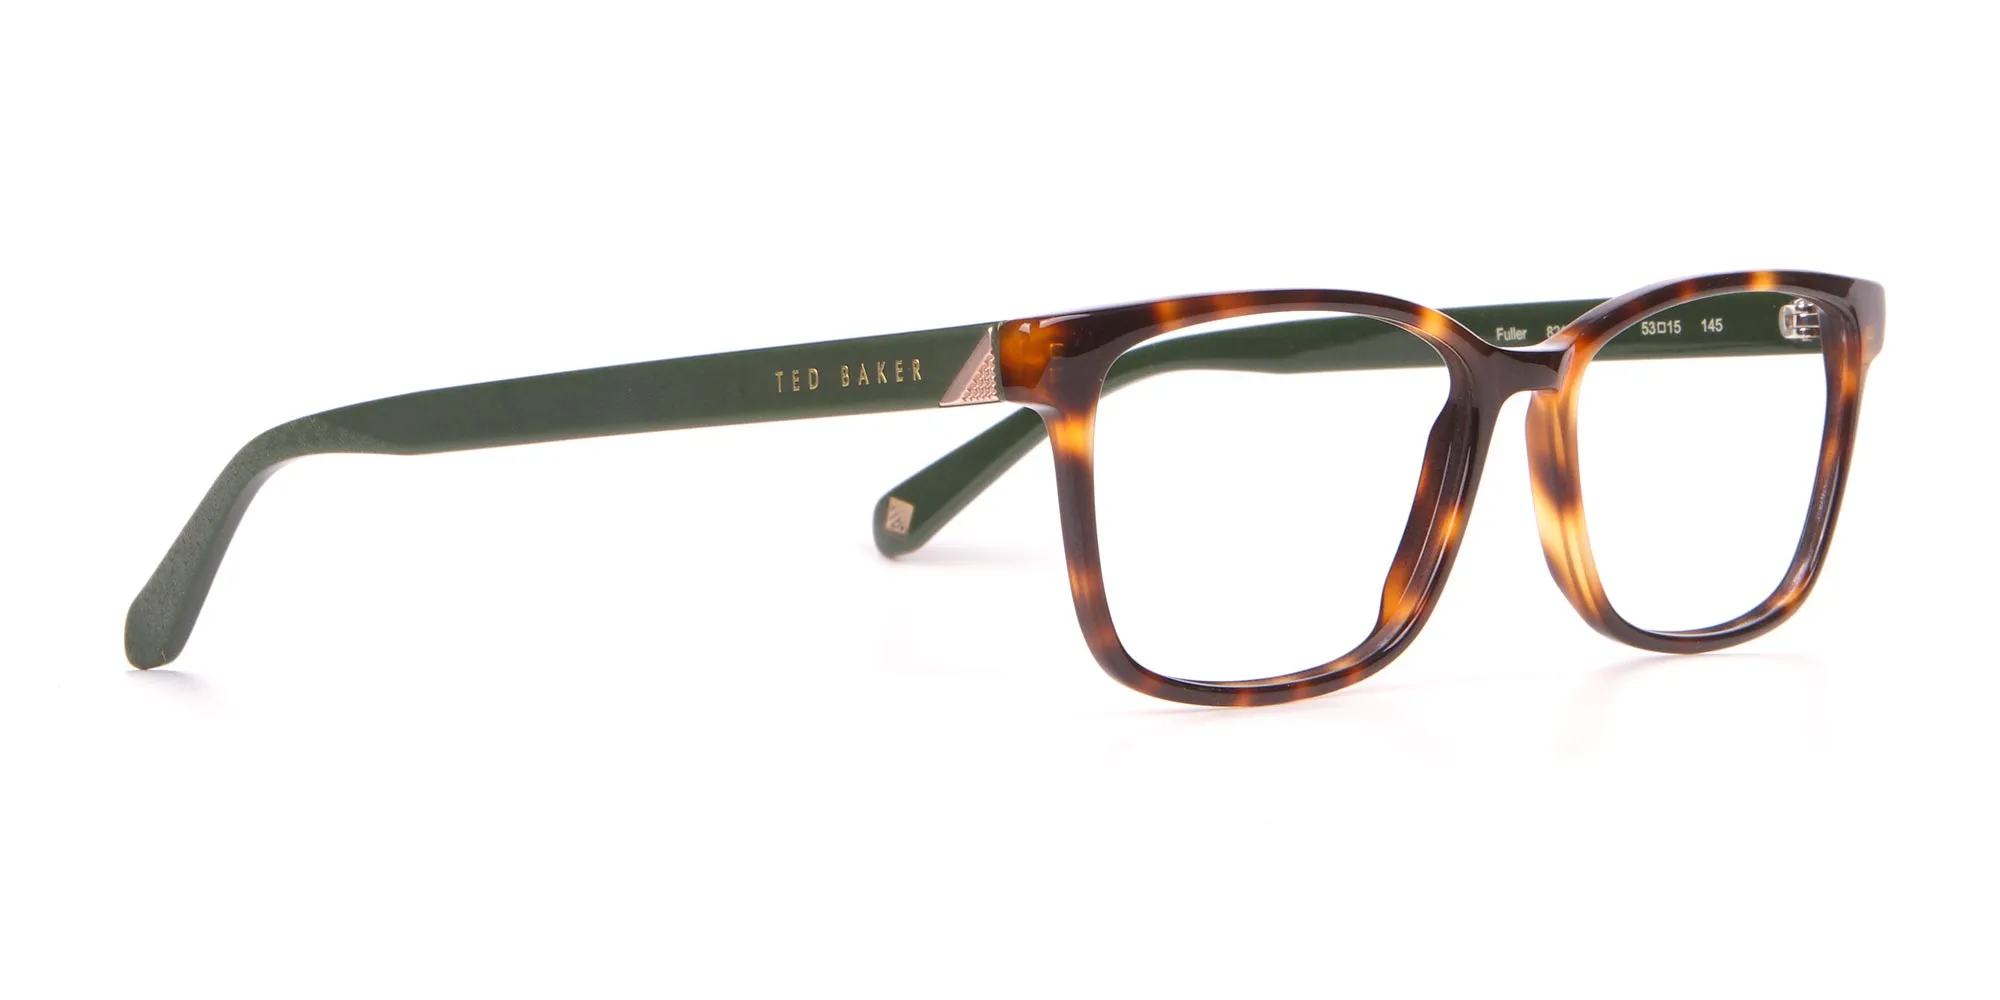 TED BAKER TB2810 FULLER Rectangle Glasses Green & Tortoise-2